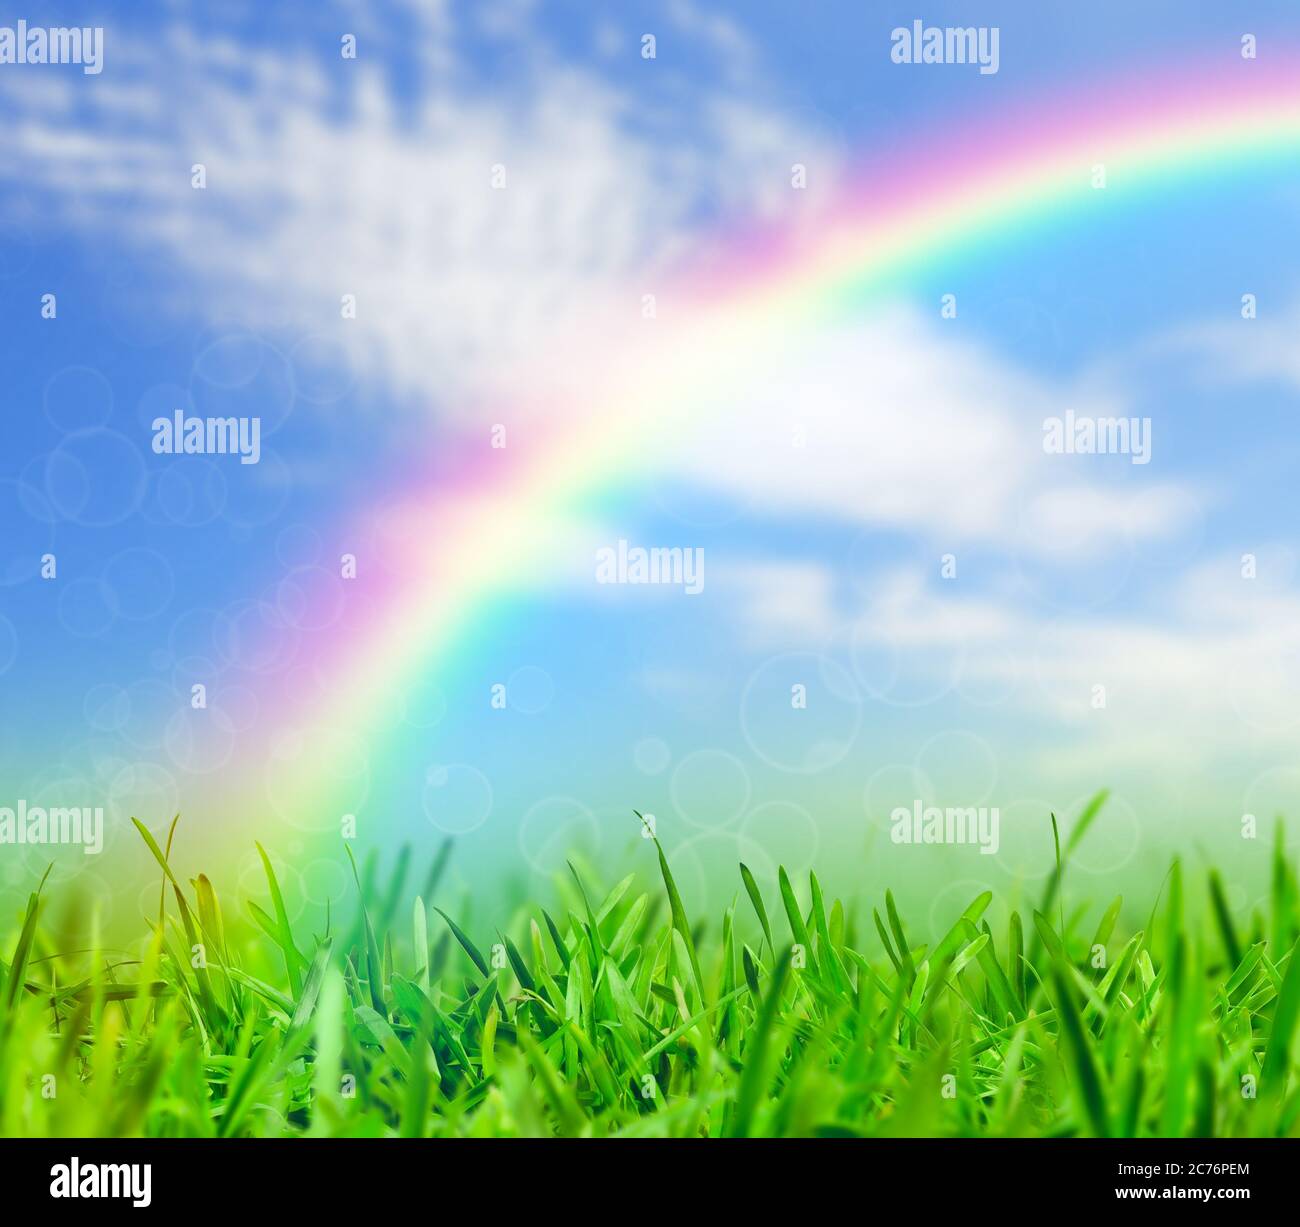 Grünes Gras und blauer Himmel mit einem Regenbogen, Frühling Natur Hintergrund Stockfoto